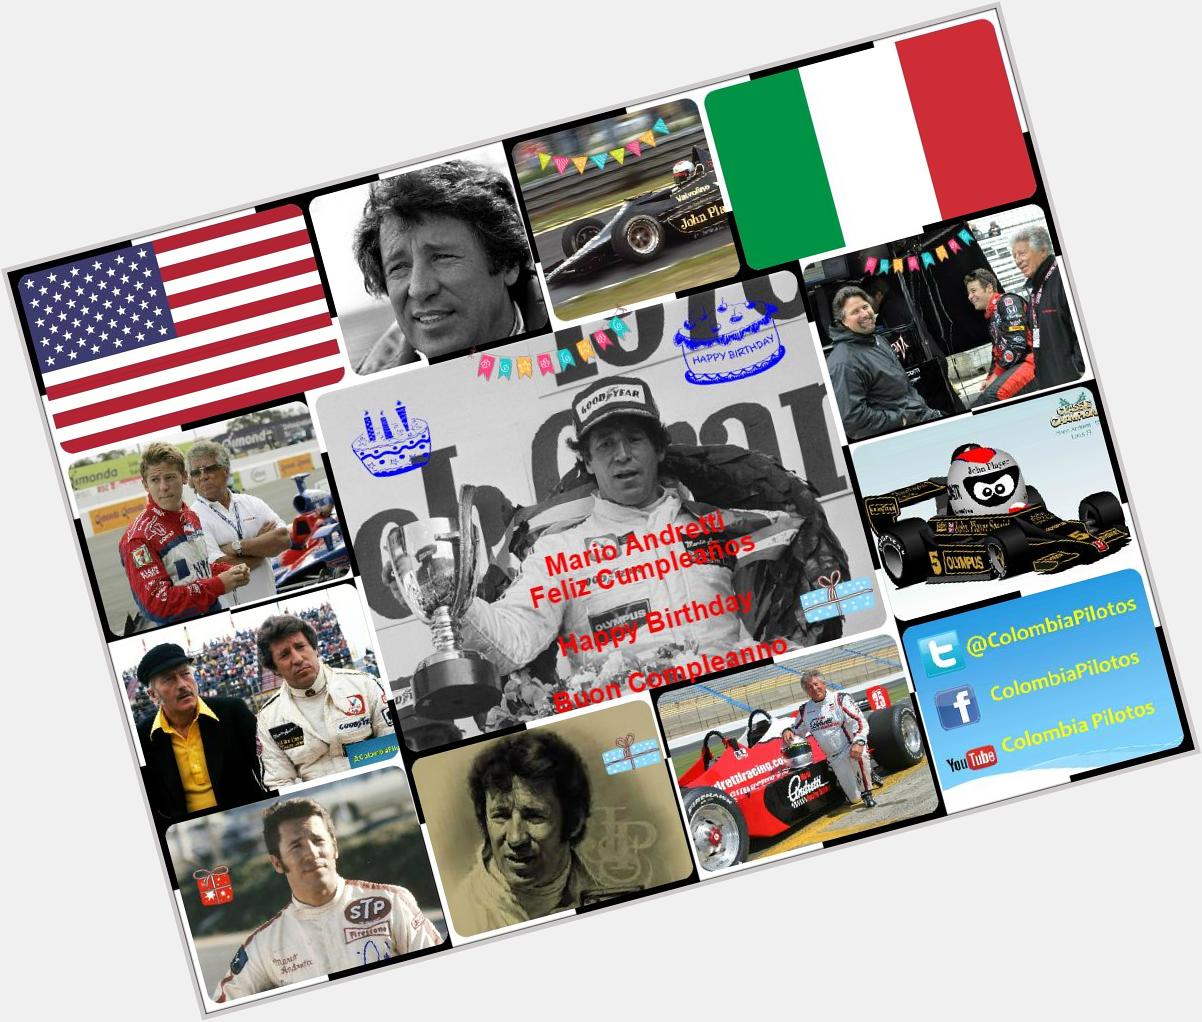     Mario Andretti Feliz Cumpleaños
Happy Birthday
Buon Compleanno 